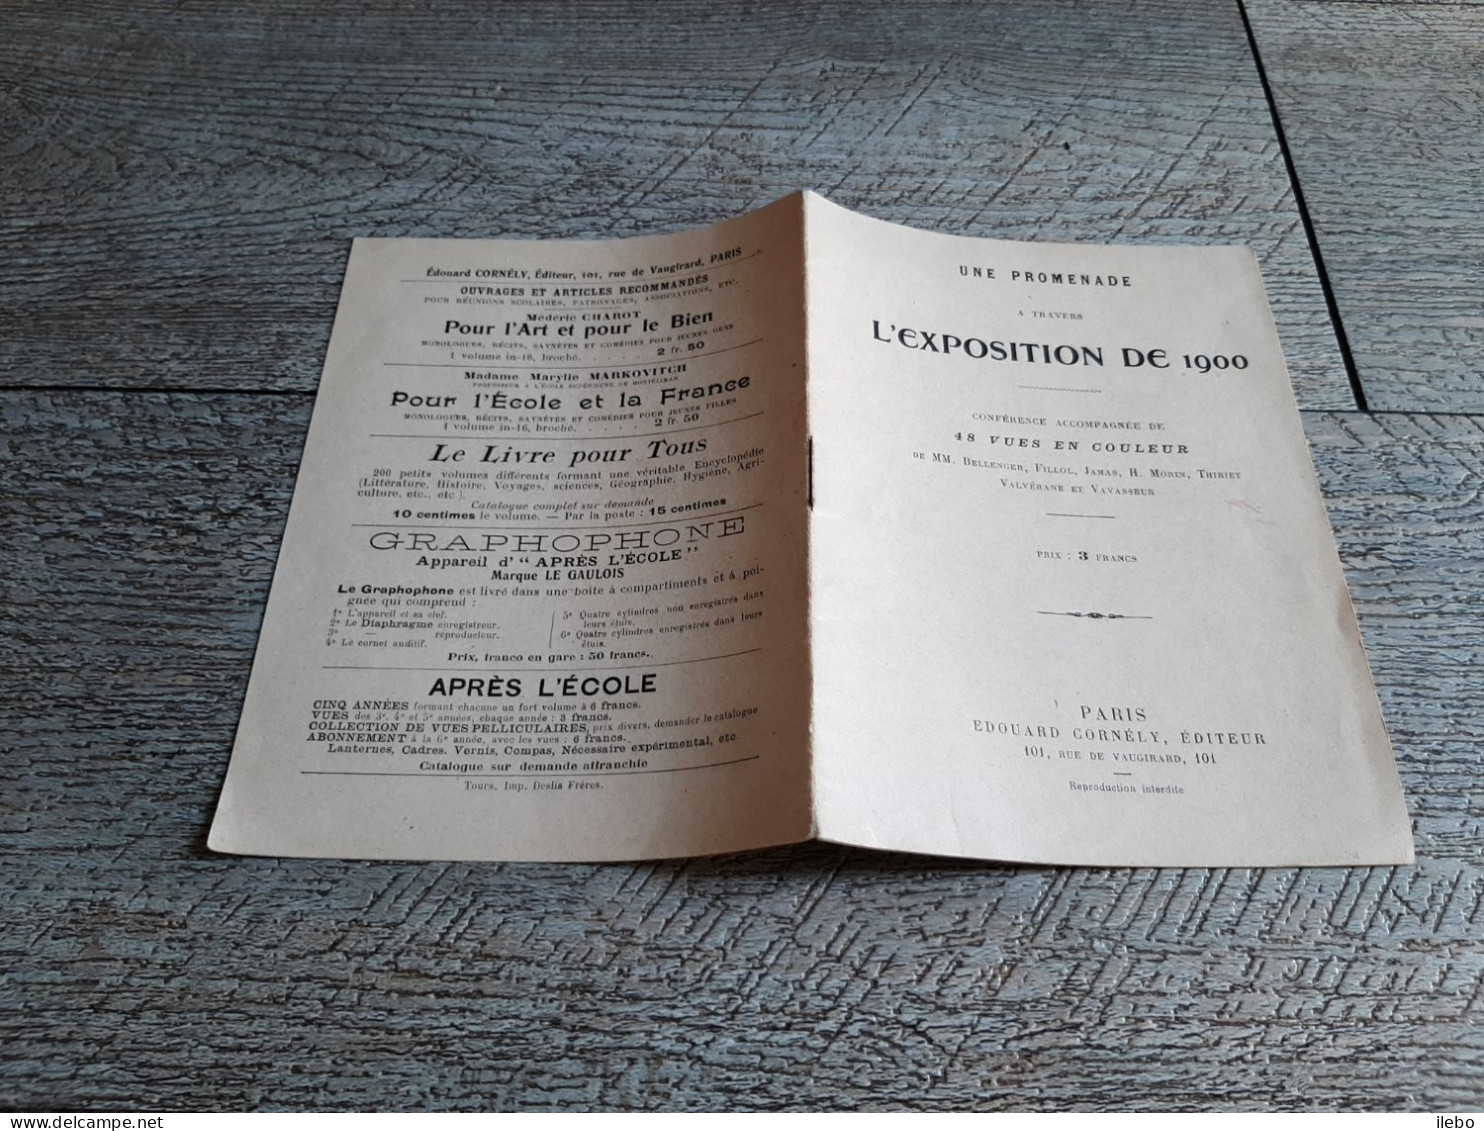 Petite Brochure Une Promenade à Travers L'exposition De 1900 Conférence Accompagnée De 48 Vues Paris - Paris